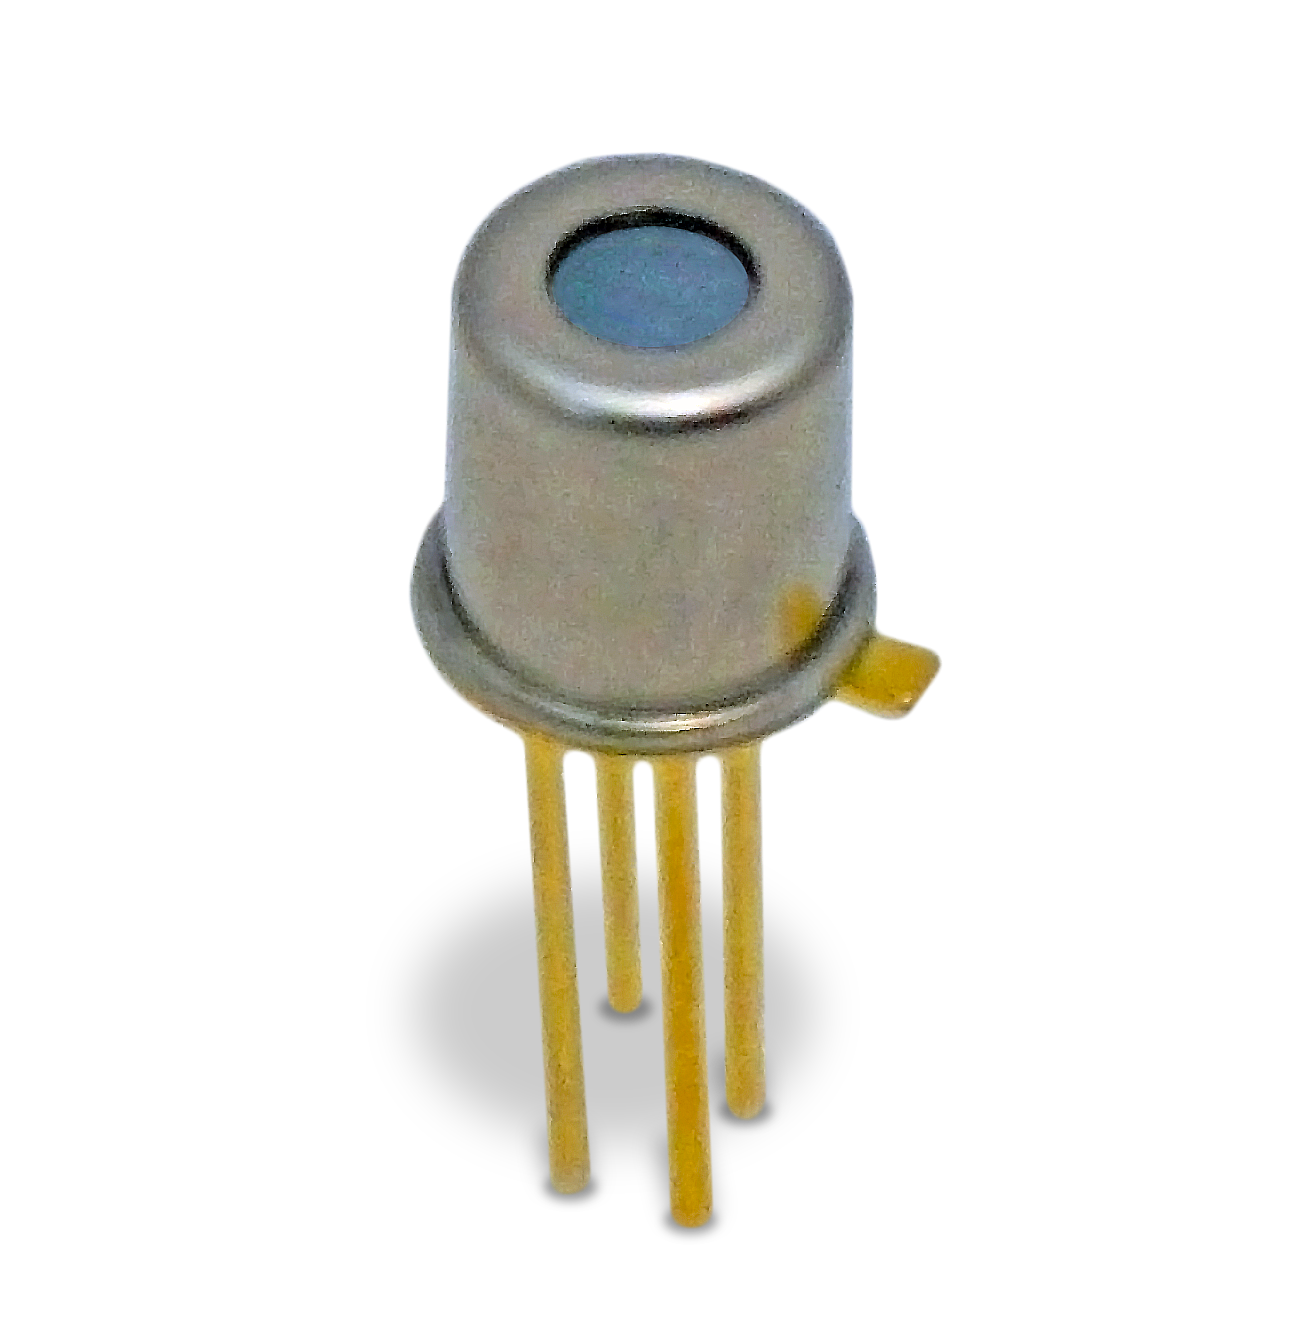 Le NOUVEAU détecteur à thermopile miniature TPiD 1T 0122 L3.0 d'Excelitas est pourvu d'un boîtier TO-46 compact et d'une lentille de mise au point